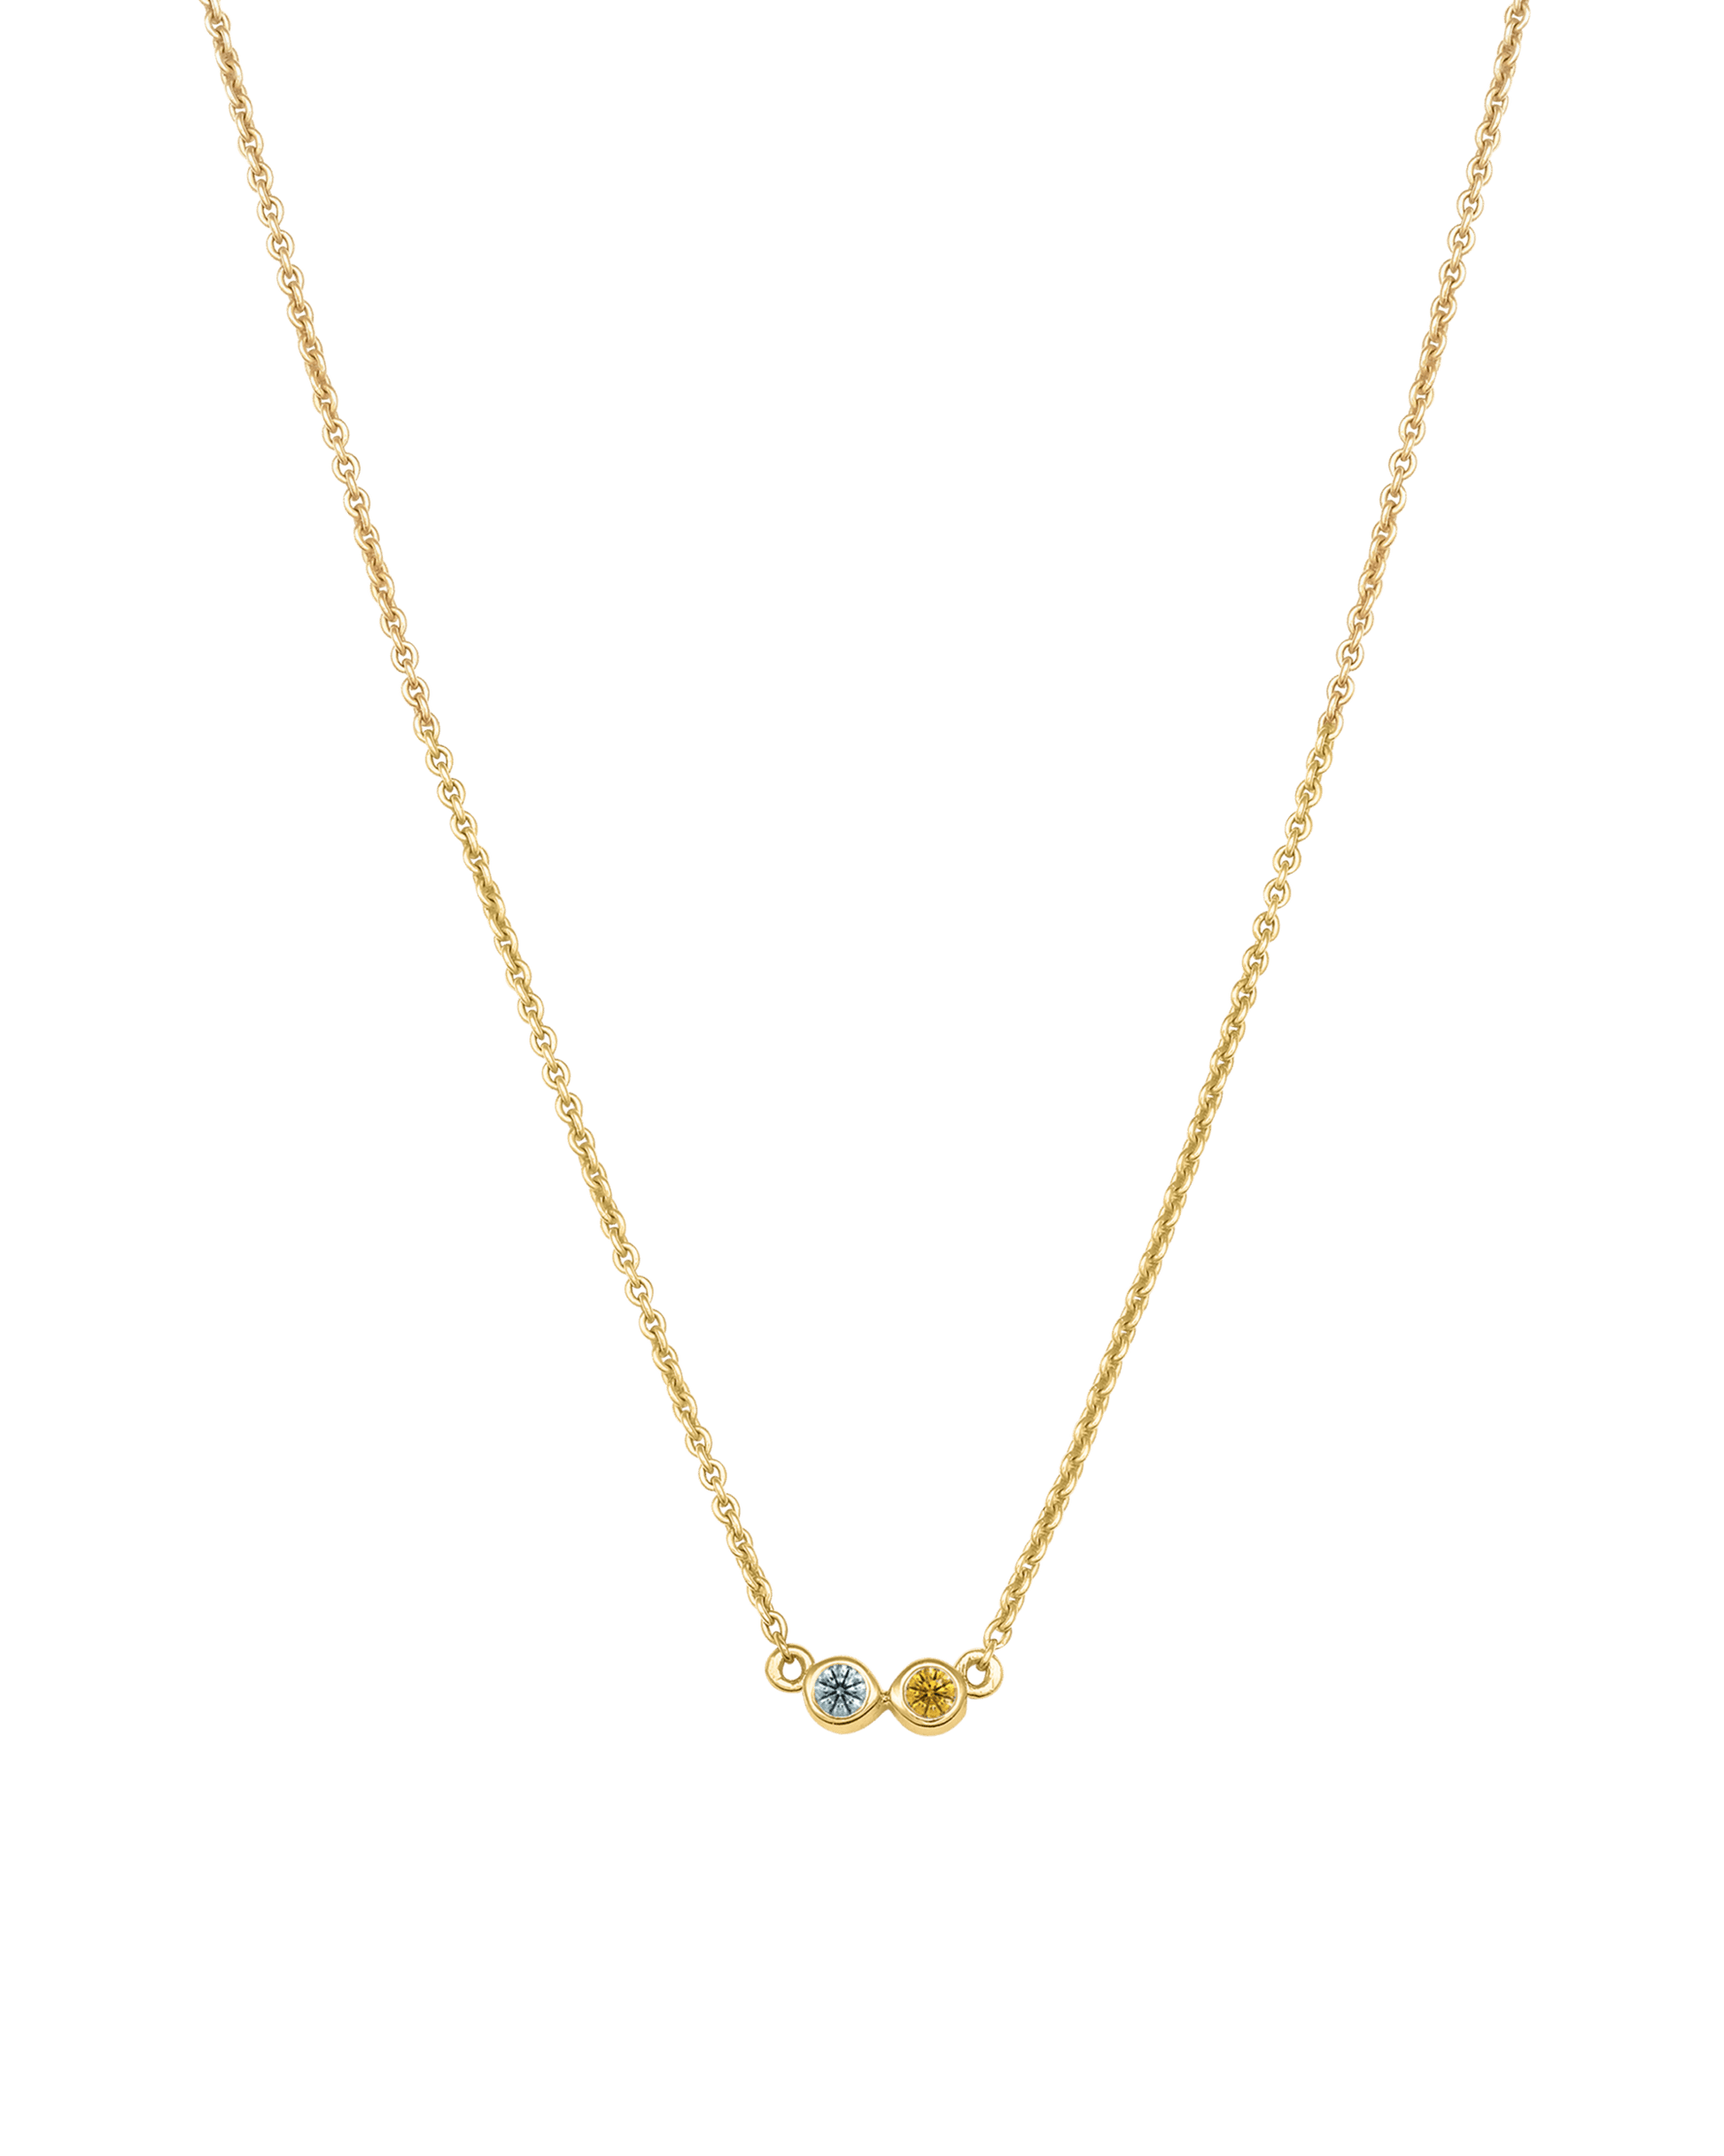 Bauble Birthstone Necklace - 18K Gold Vermeil Necklaces Gold Vermeil 2 Birthstones Small - 16" 